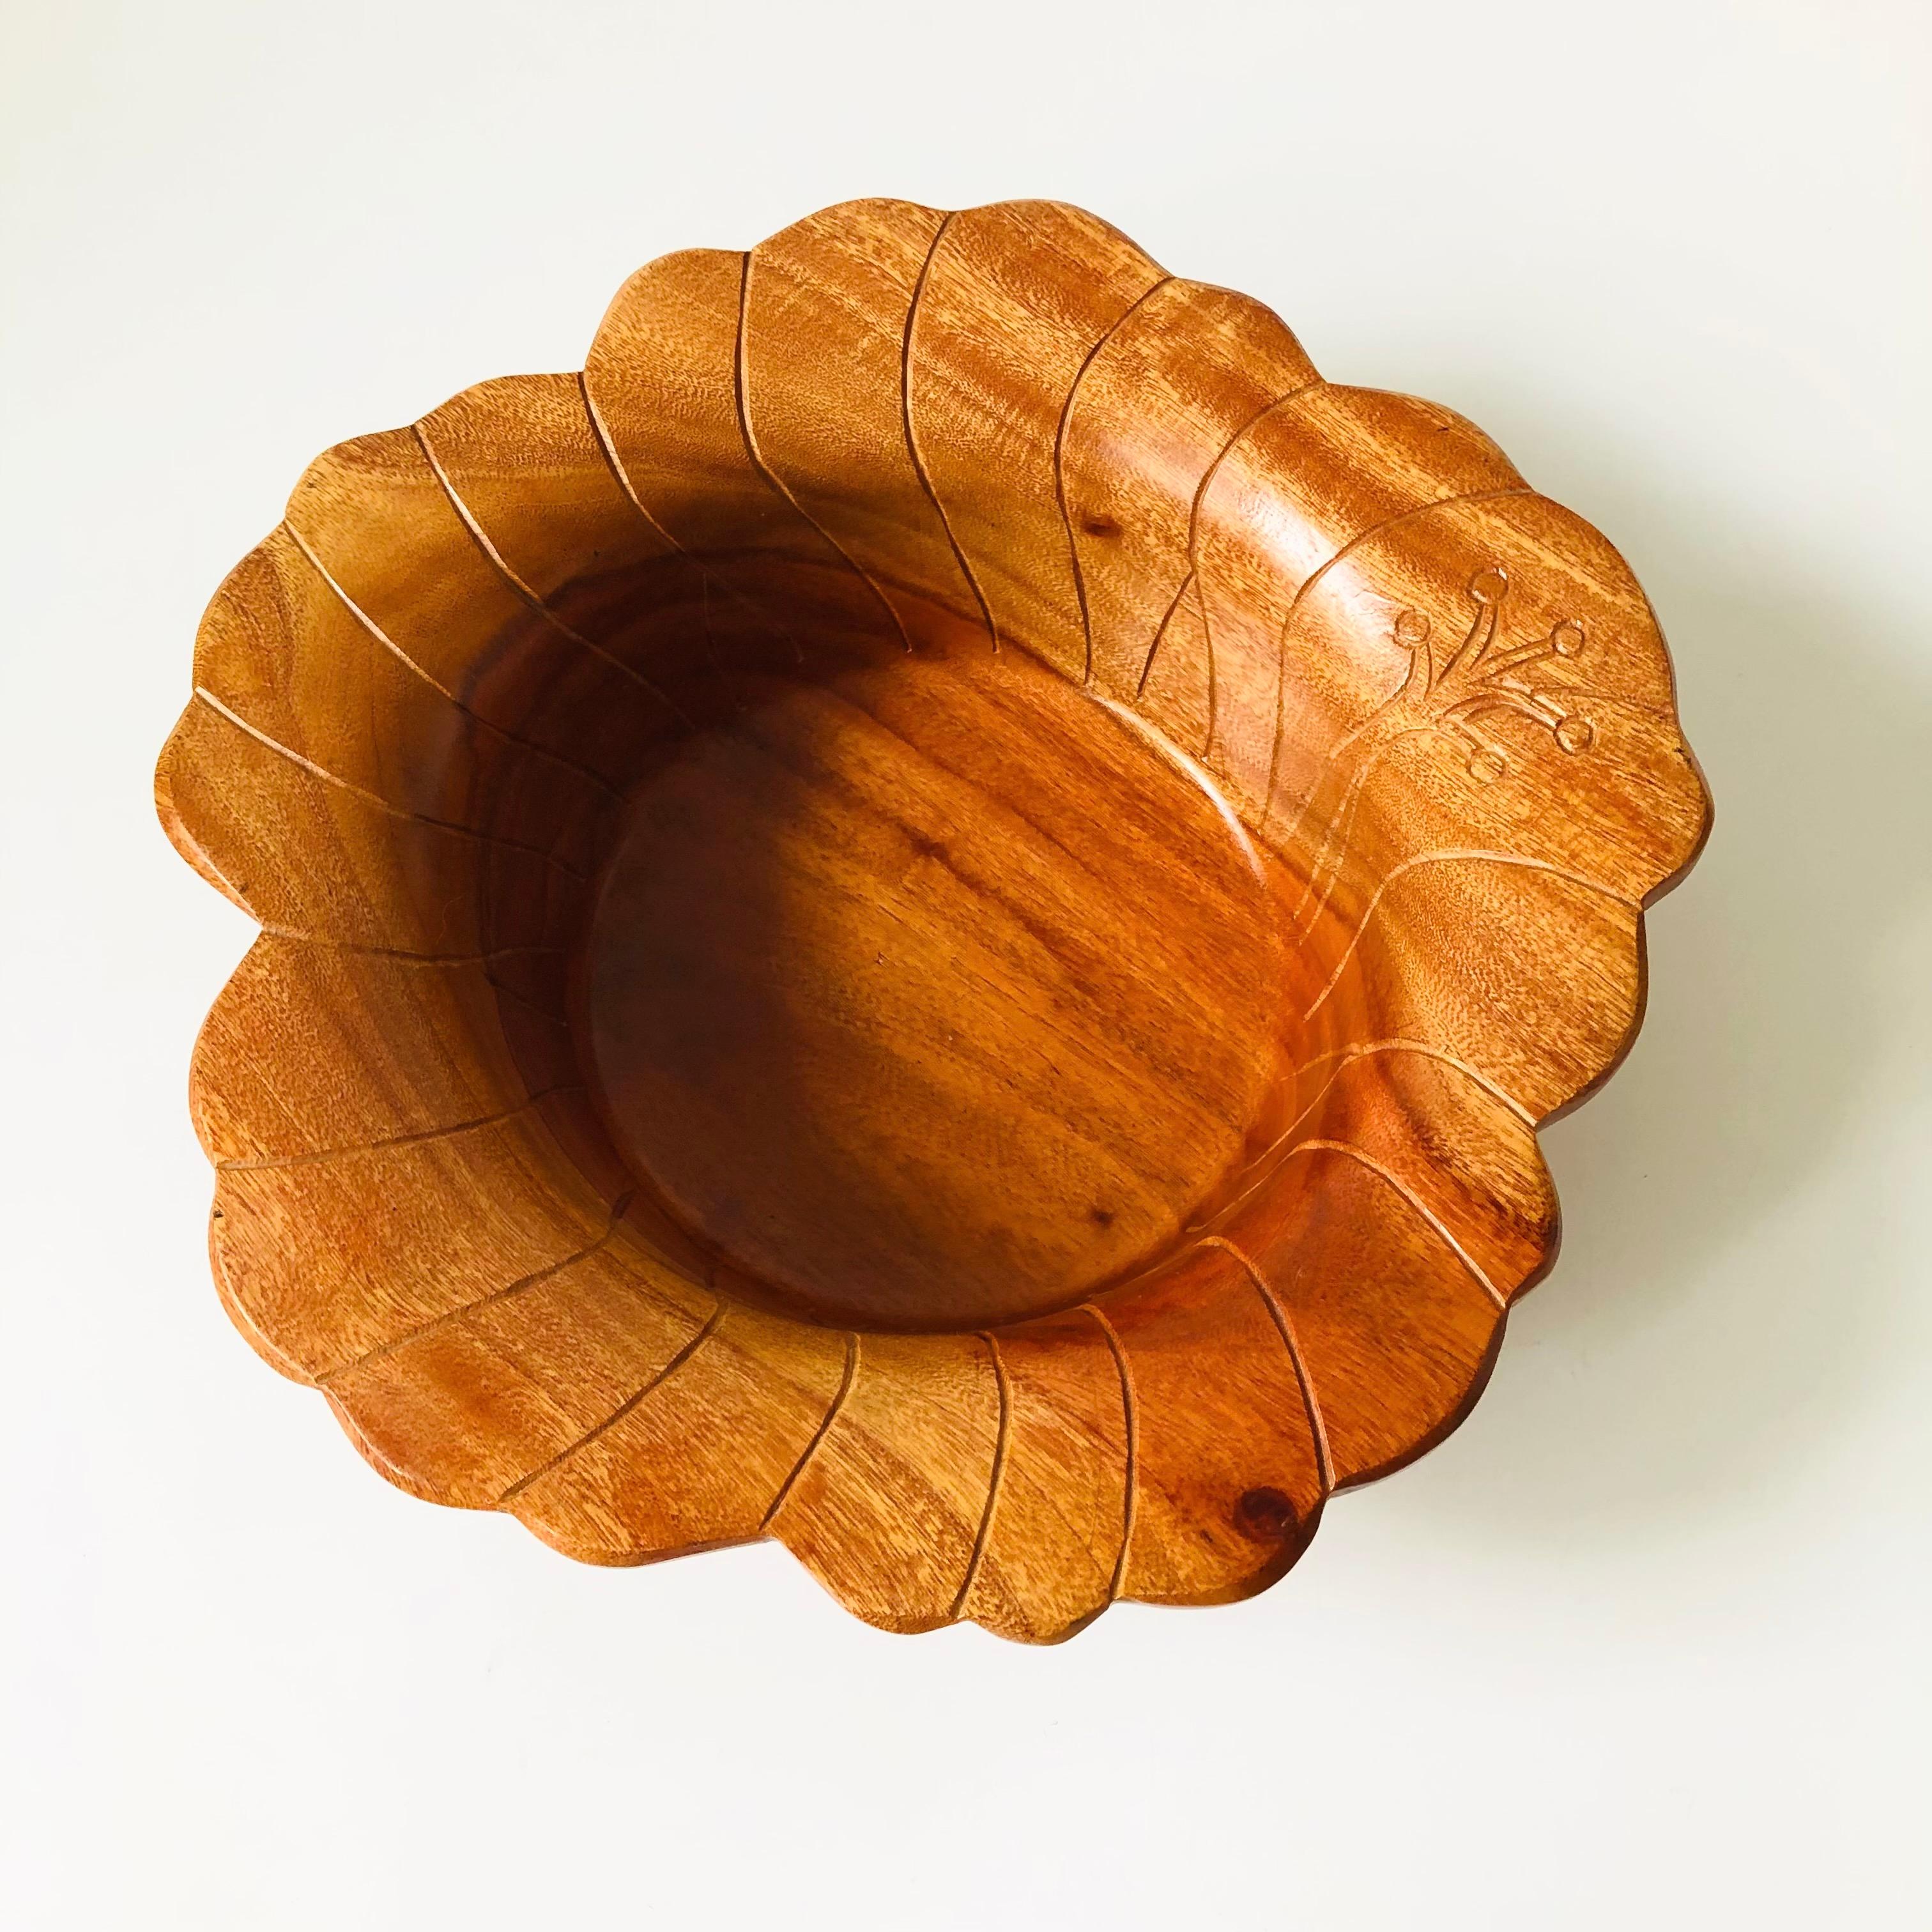 Un bol vintage en bois sculpté en forme de fleur. Le large rebord est orné de magnifiques détails. Taille moyenne polyvalente pouvant être utilisée comme bol de service ou bol à fruits.

